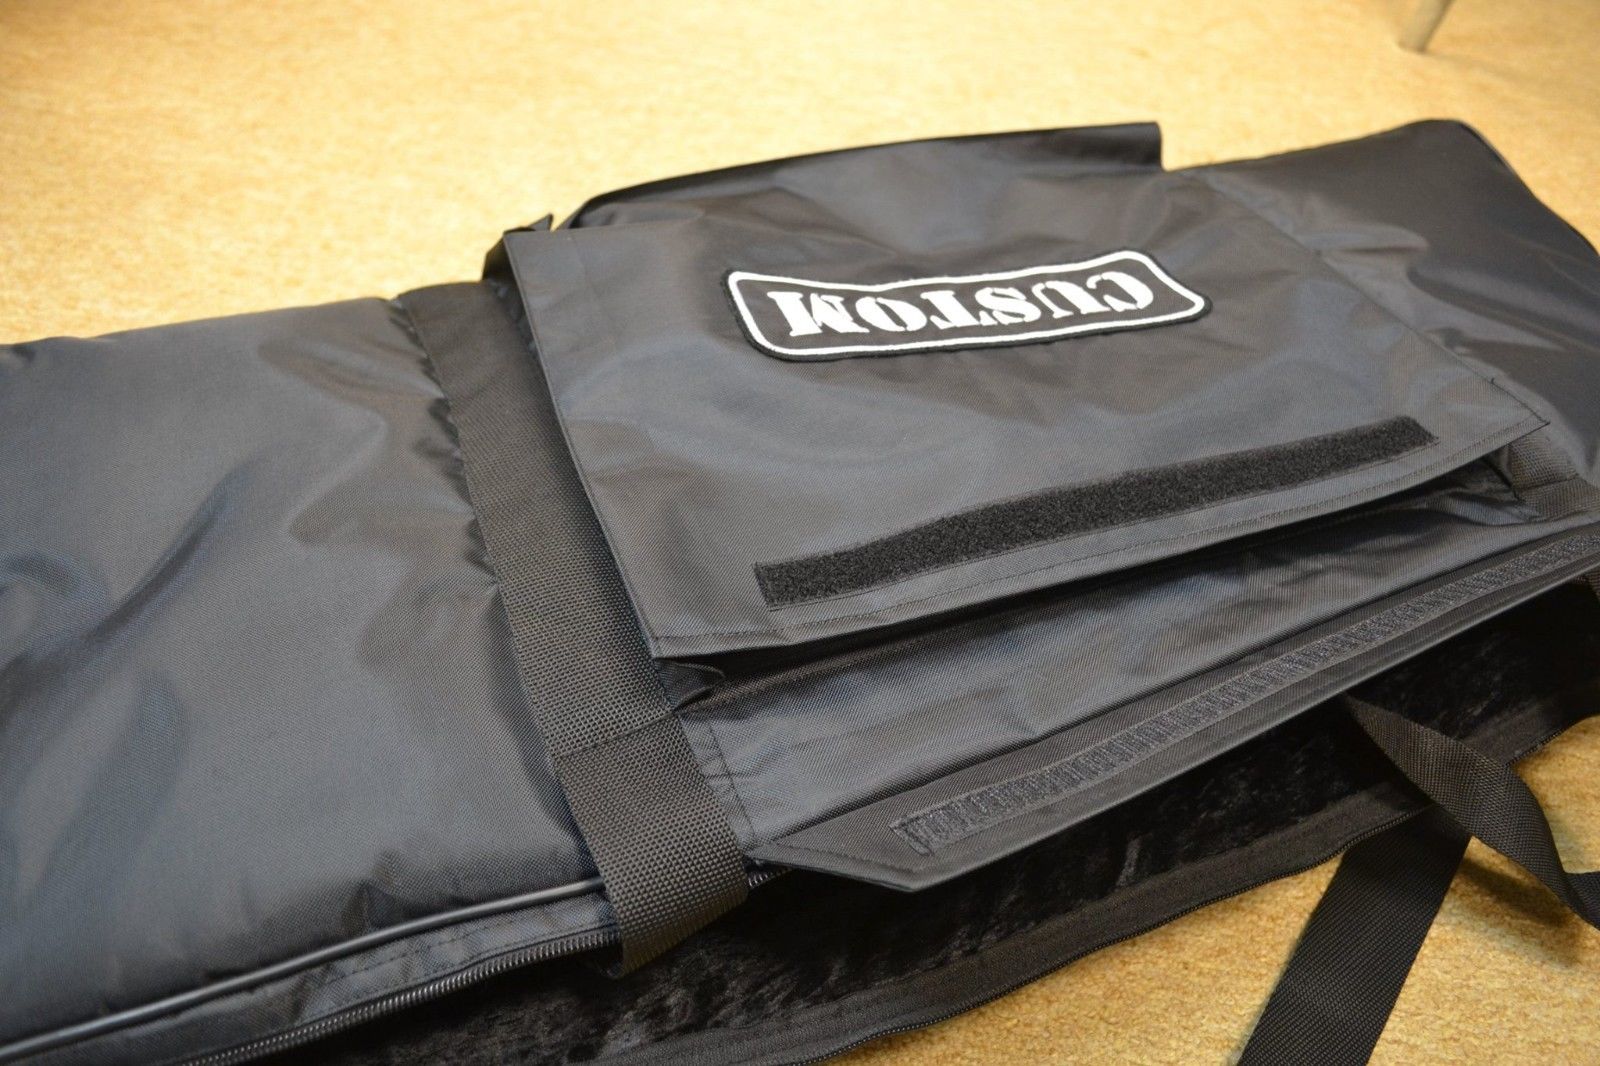 KORG Microstation 61 Key Custom Padded Keyboard and Synth Travel Bag Soft Case Inside Velvet Interior Heavy Duty Nylon Protection Slip Cover